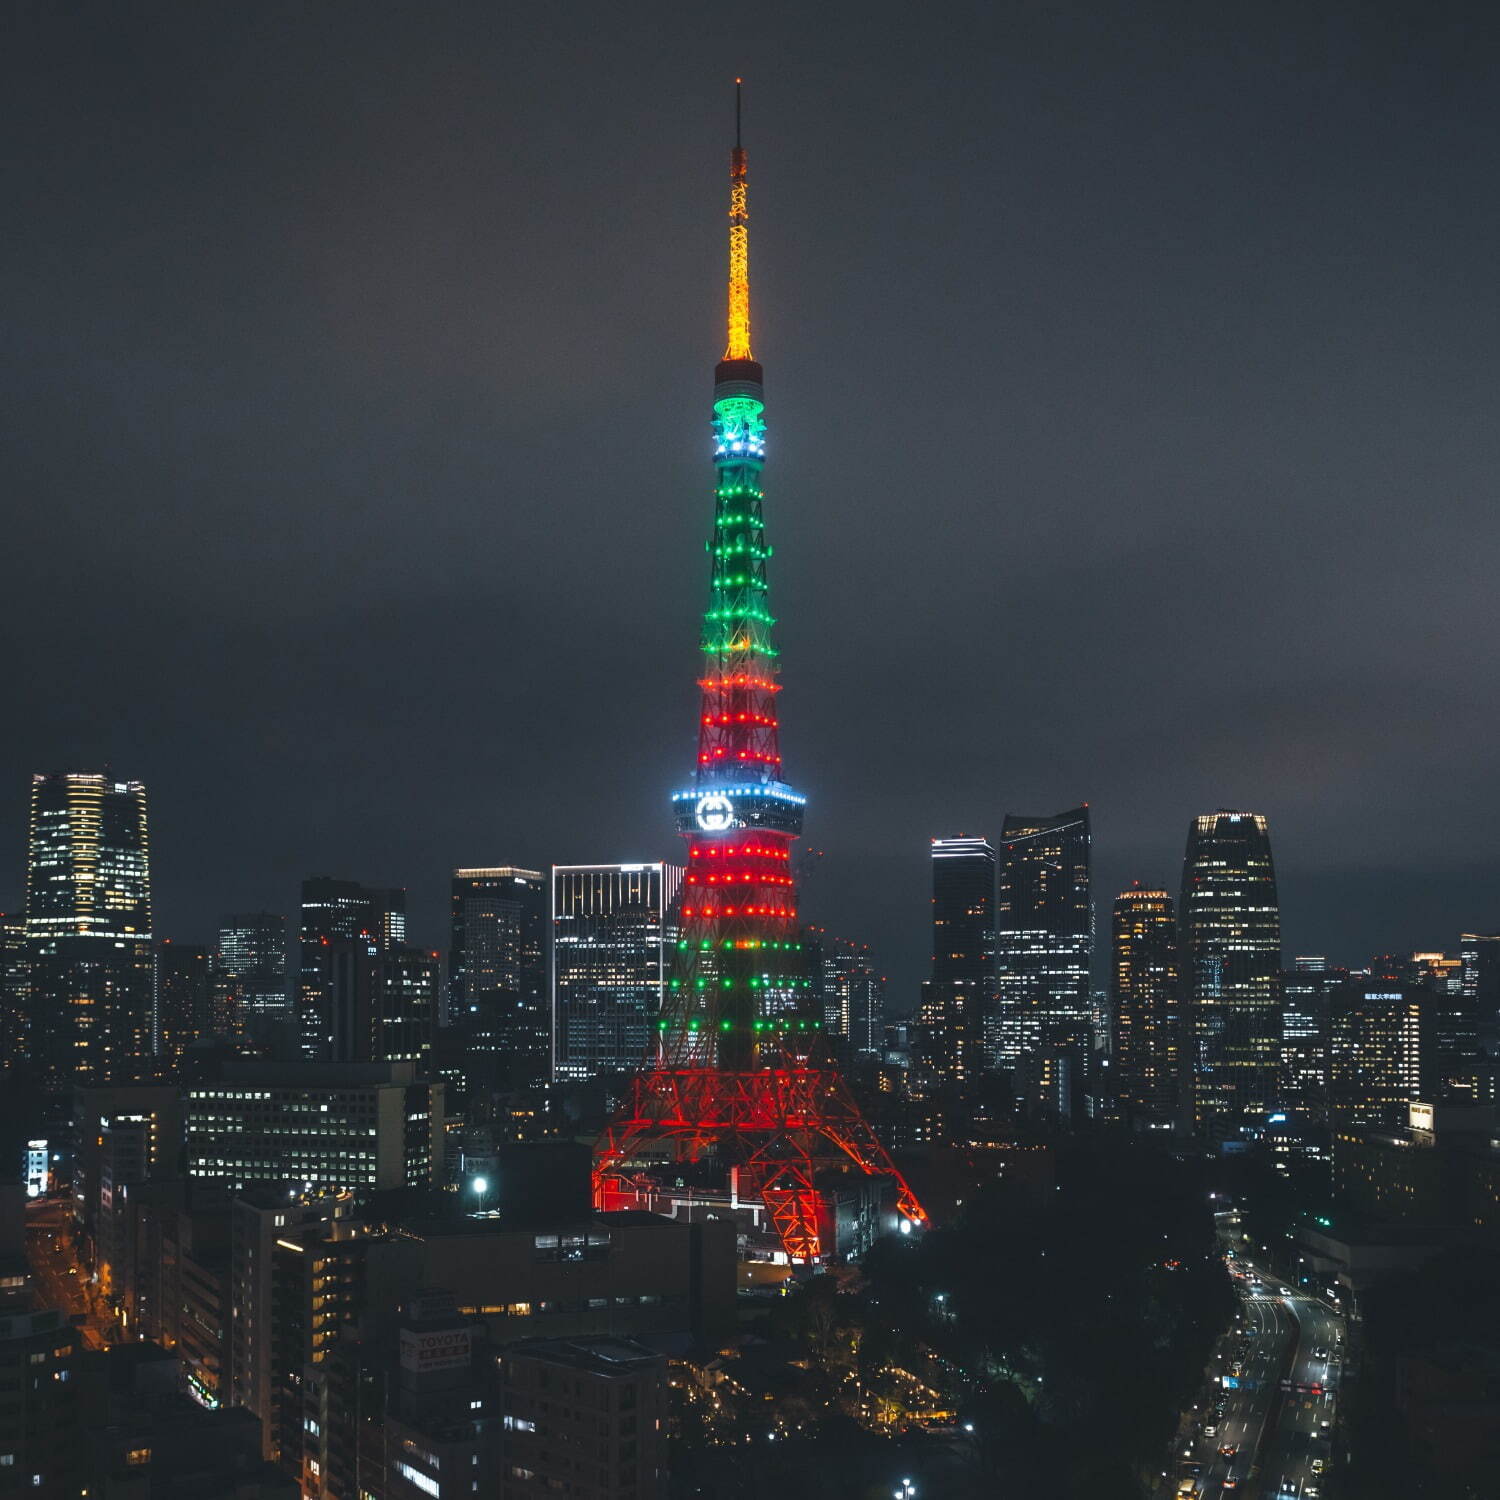 ライト アップ 今日 東京 タワー 東京タワーが「春節色」に染まった夜 日中友好を願い点灯も真下では「反中デモ」の悲哀: